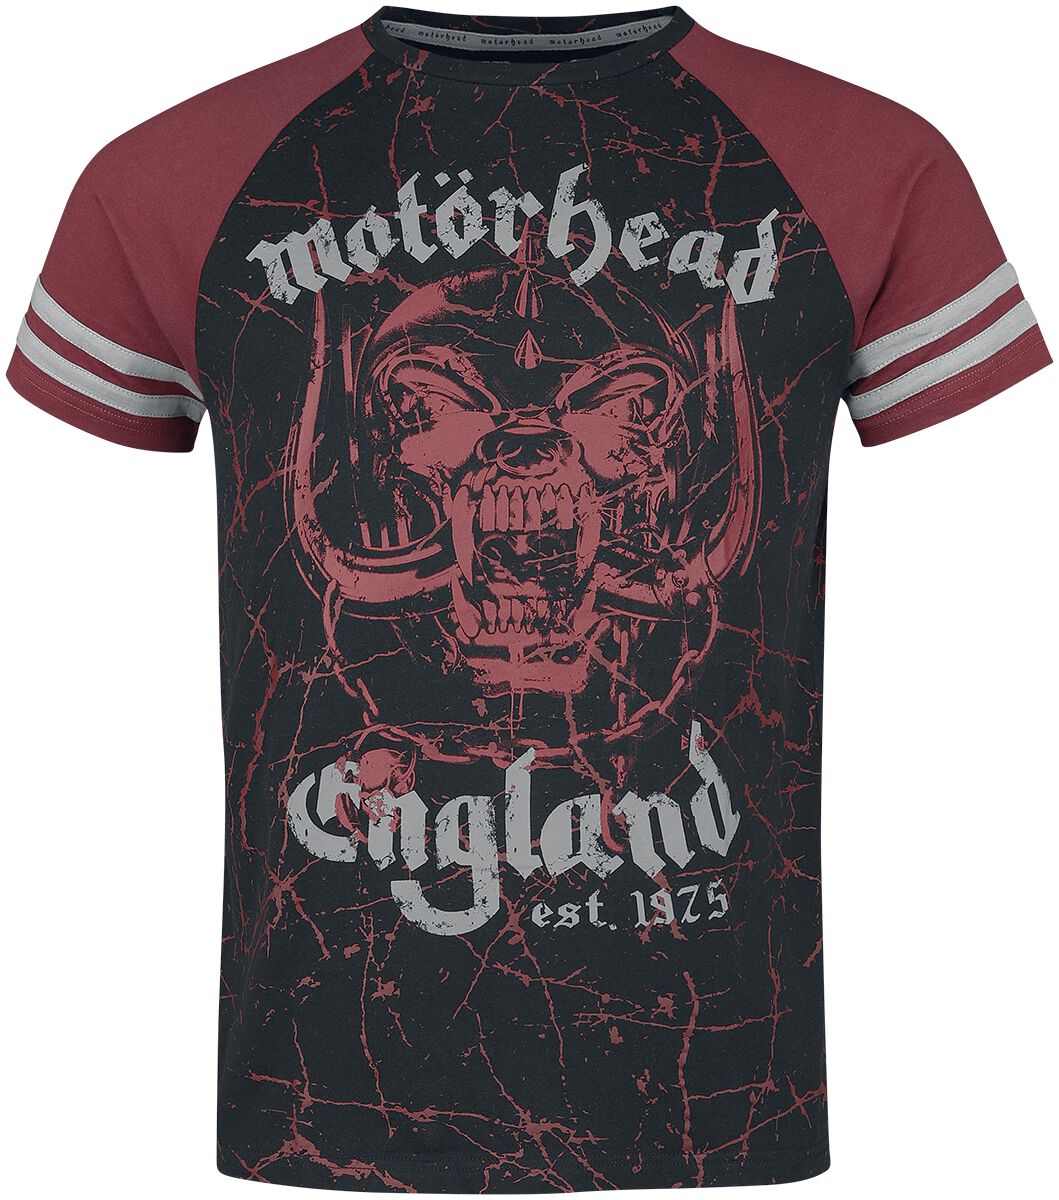 Motörhead T-Shirt - EMP Signature Collection - M bis XL - für Männer - Größe M - schwarz/bordeaux  - EMP exklusives Merchandise!